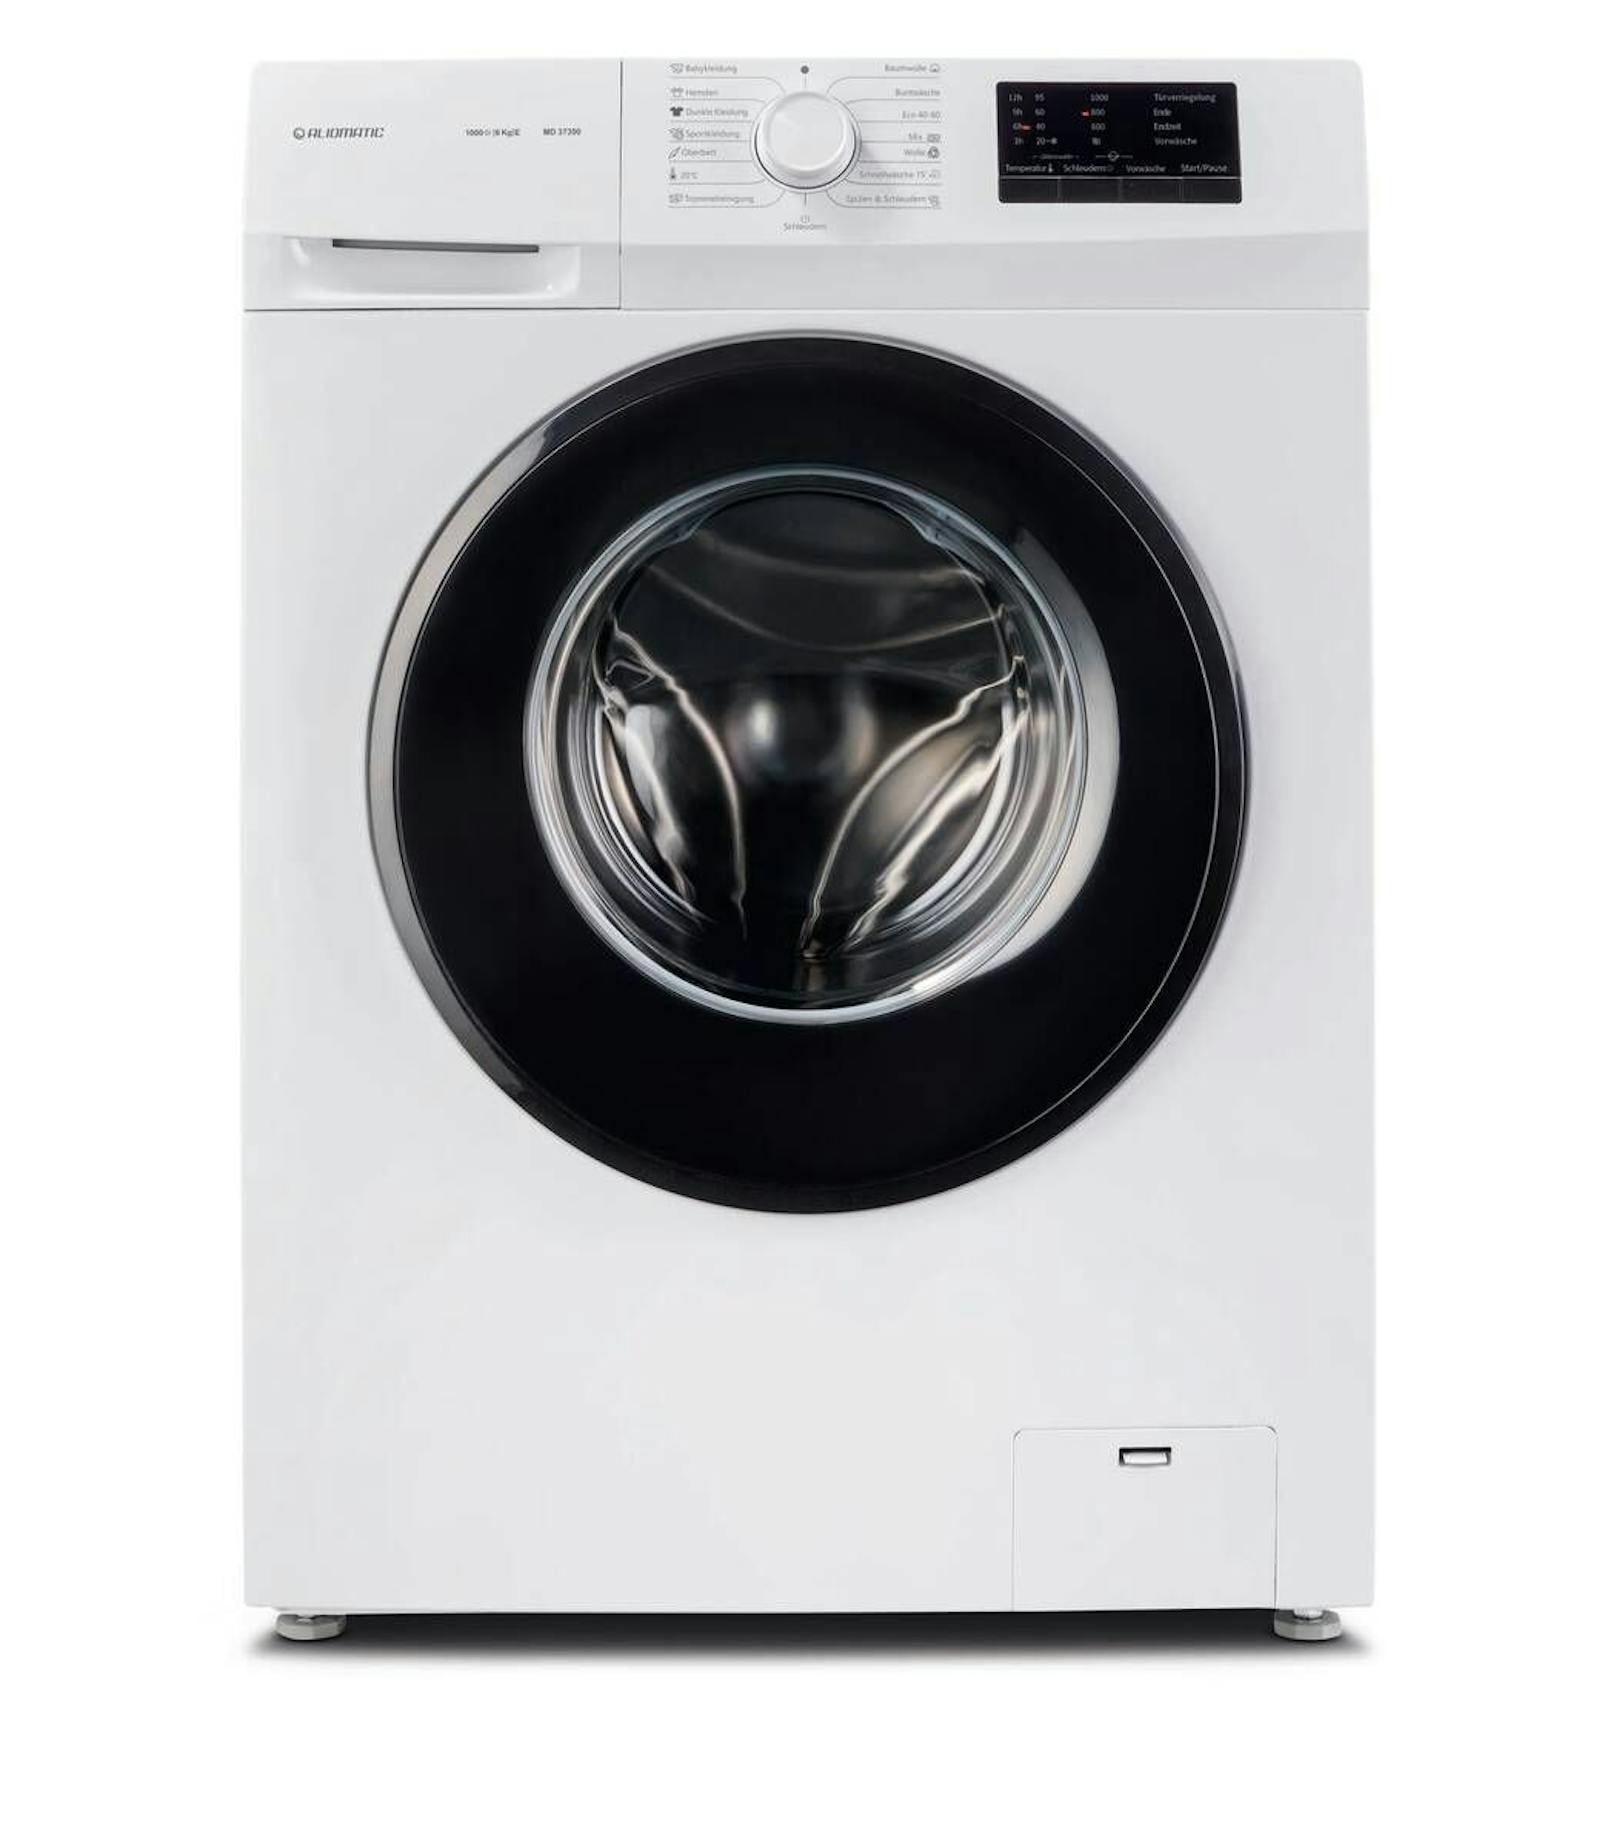 Die Waschmaschine wird um 118,99 Euro erhältlich sein (anstatt um 239 Euro).